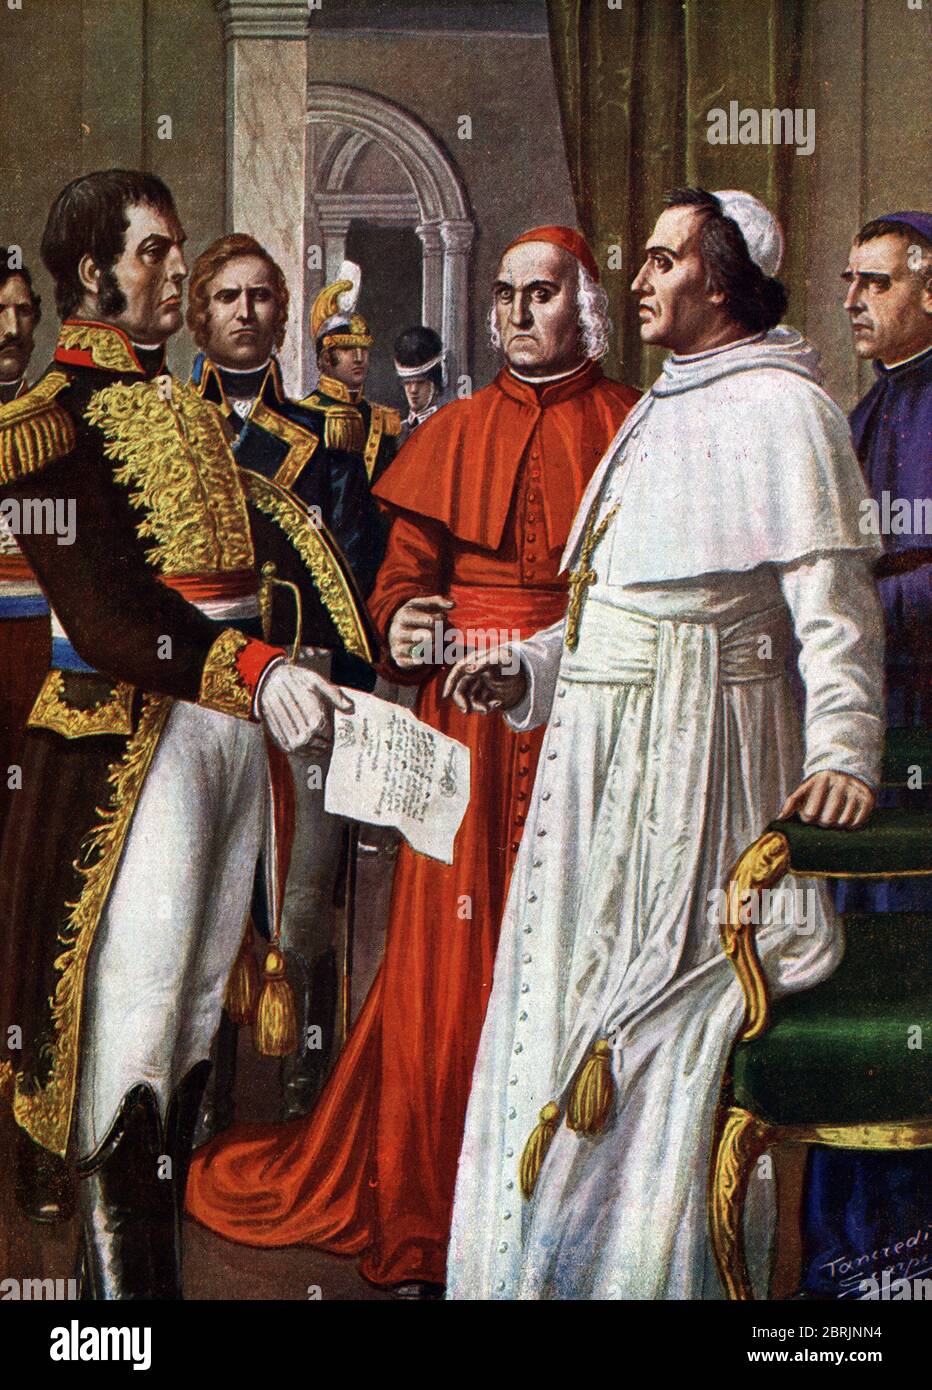 'Le pape Pie VII, prisonnier au chateau de Fontainebleau, consent a signer, le 25/01/1813, le Concordat de Fontainebleau (1813), par lequel il abdique Stock Photo